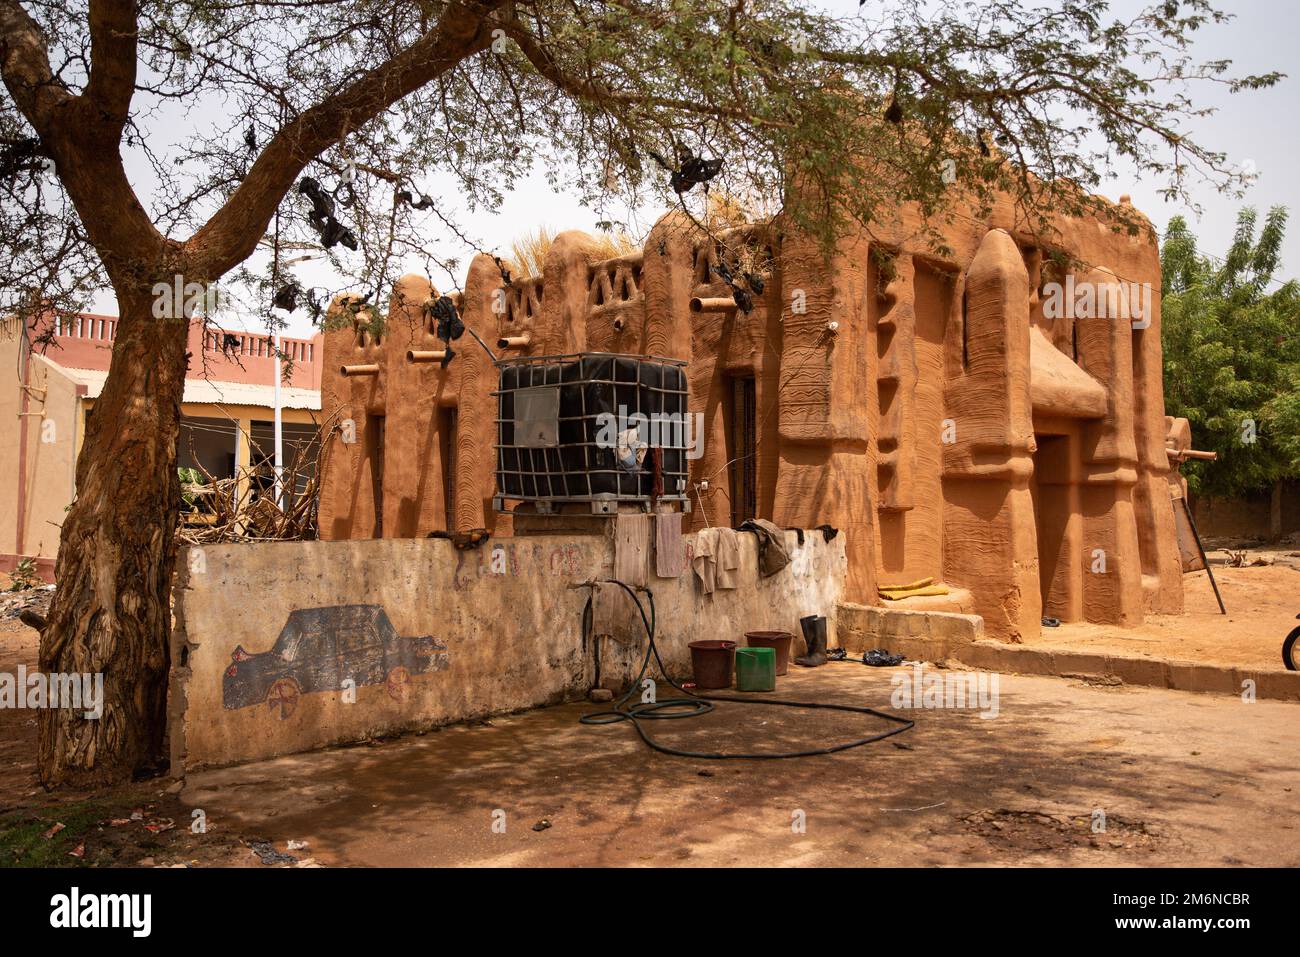 Nicolas Remene / Le Pictorium - La respuesta de Mali a los desafíos y realidades del cambio climático - 11/3/2021 - Mali / Segou / Segou - El 'Sini Foto de stock